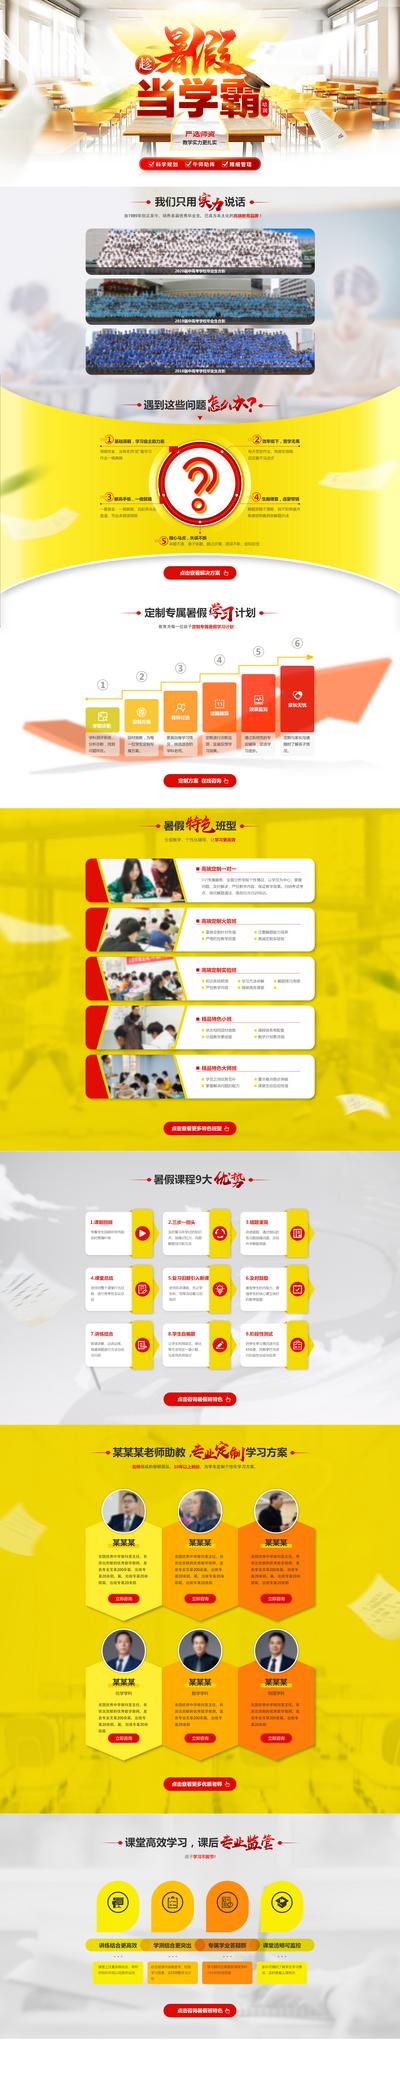 南门网 专题设计 网页设计 教育 青少年 暑假 网页专题 课程